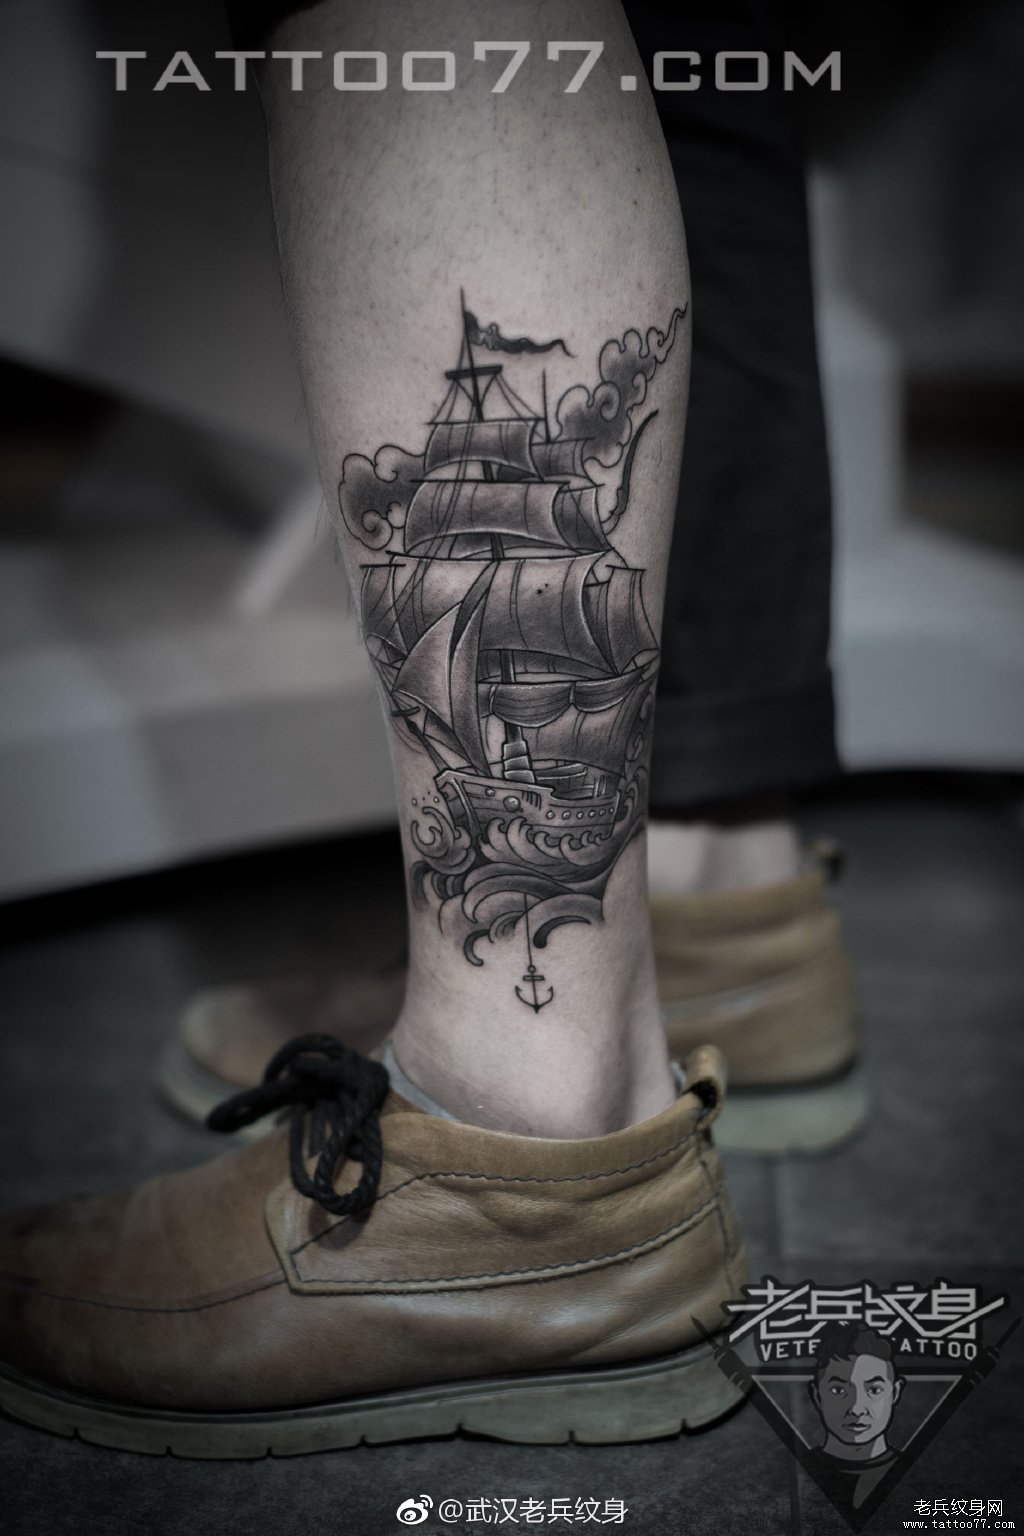 武汉刺青店打造的小腿帆船纹身图案作品